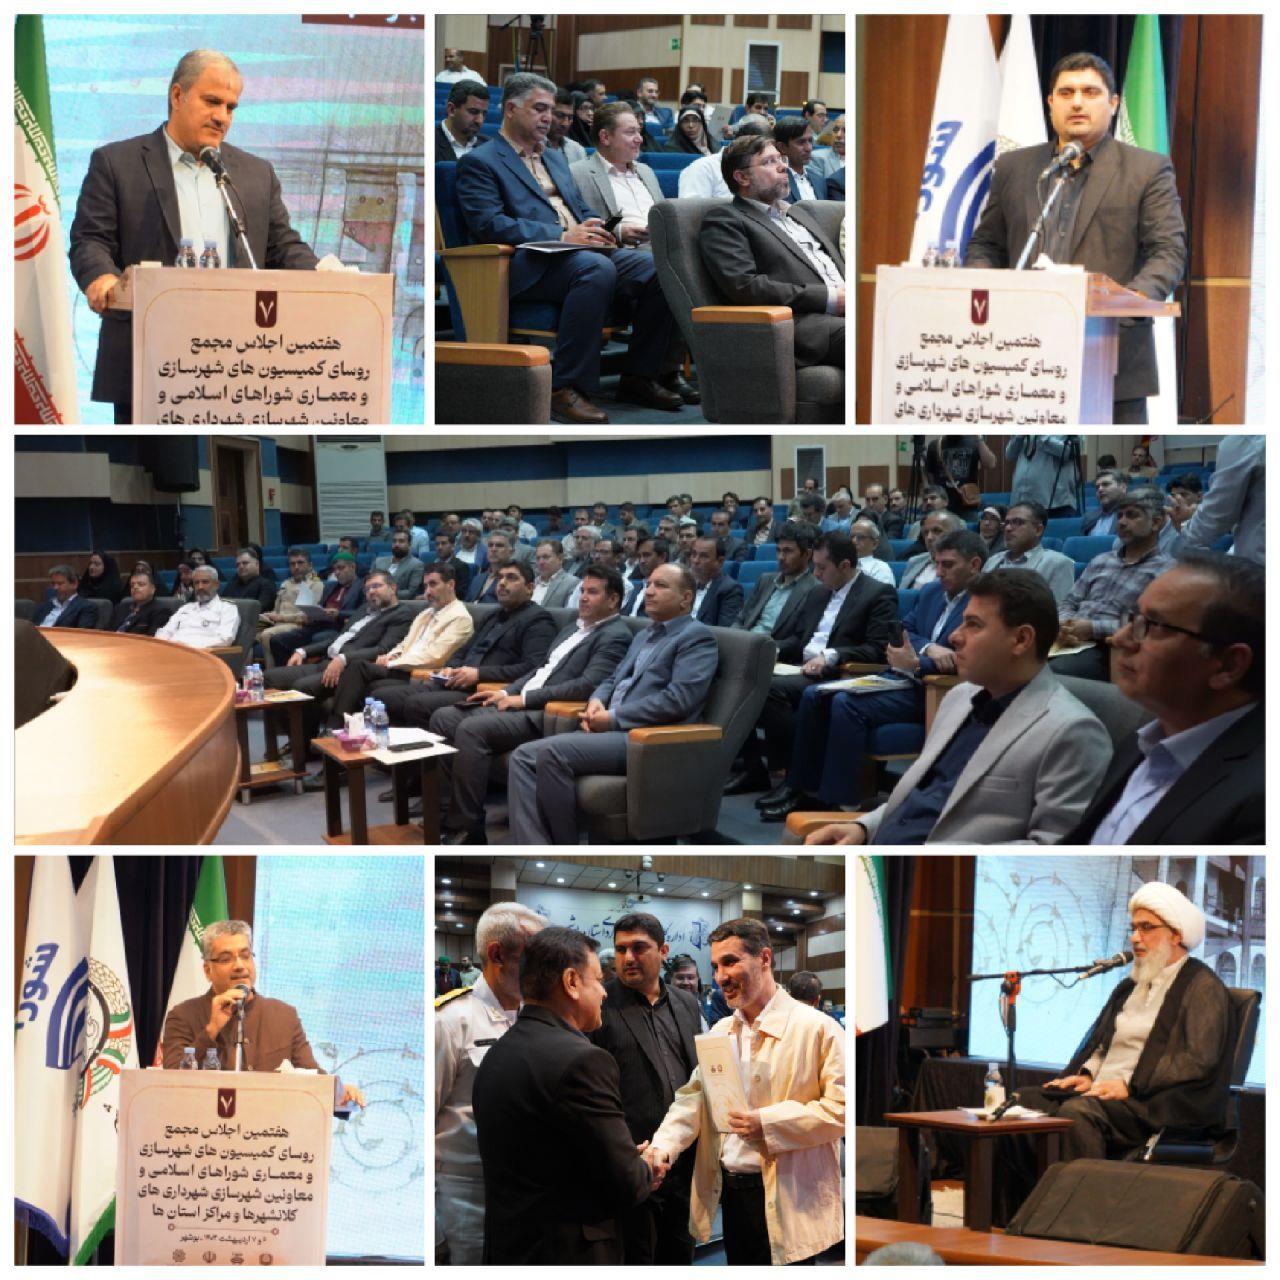 هفتمین اجلاس شهرسازی و معماری در بوشهر برگزار شد؛ شهردار: بافت تاریخی، هویت و روح بوشهر است